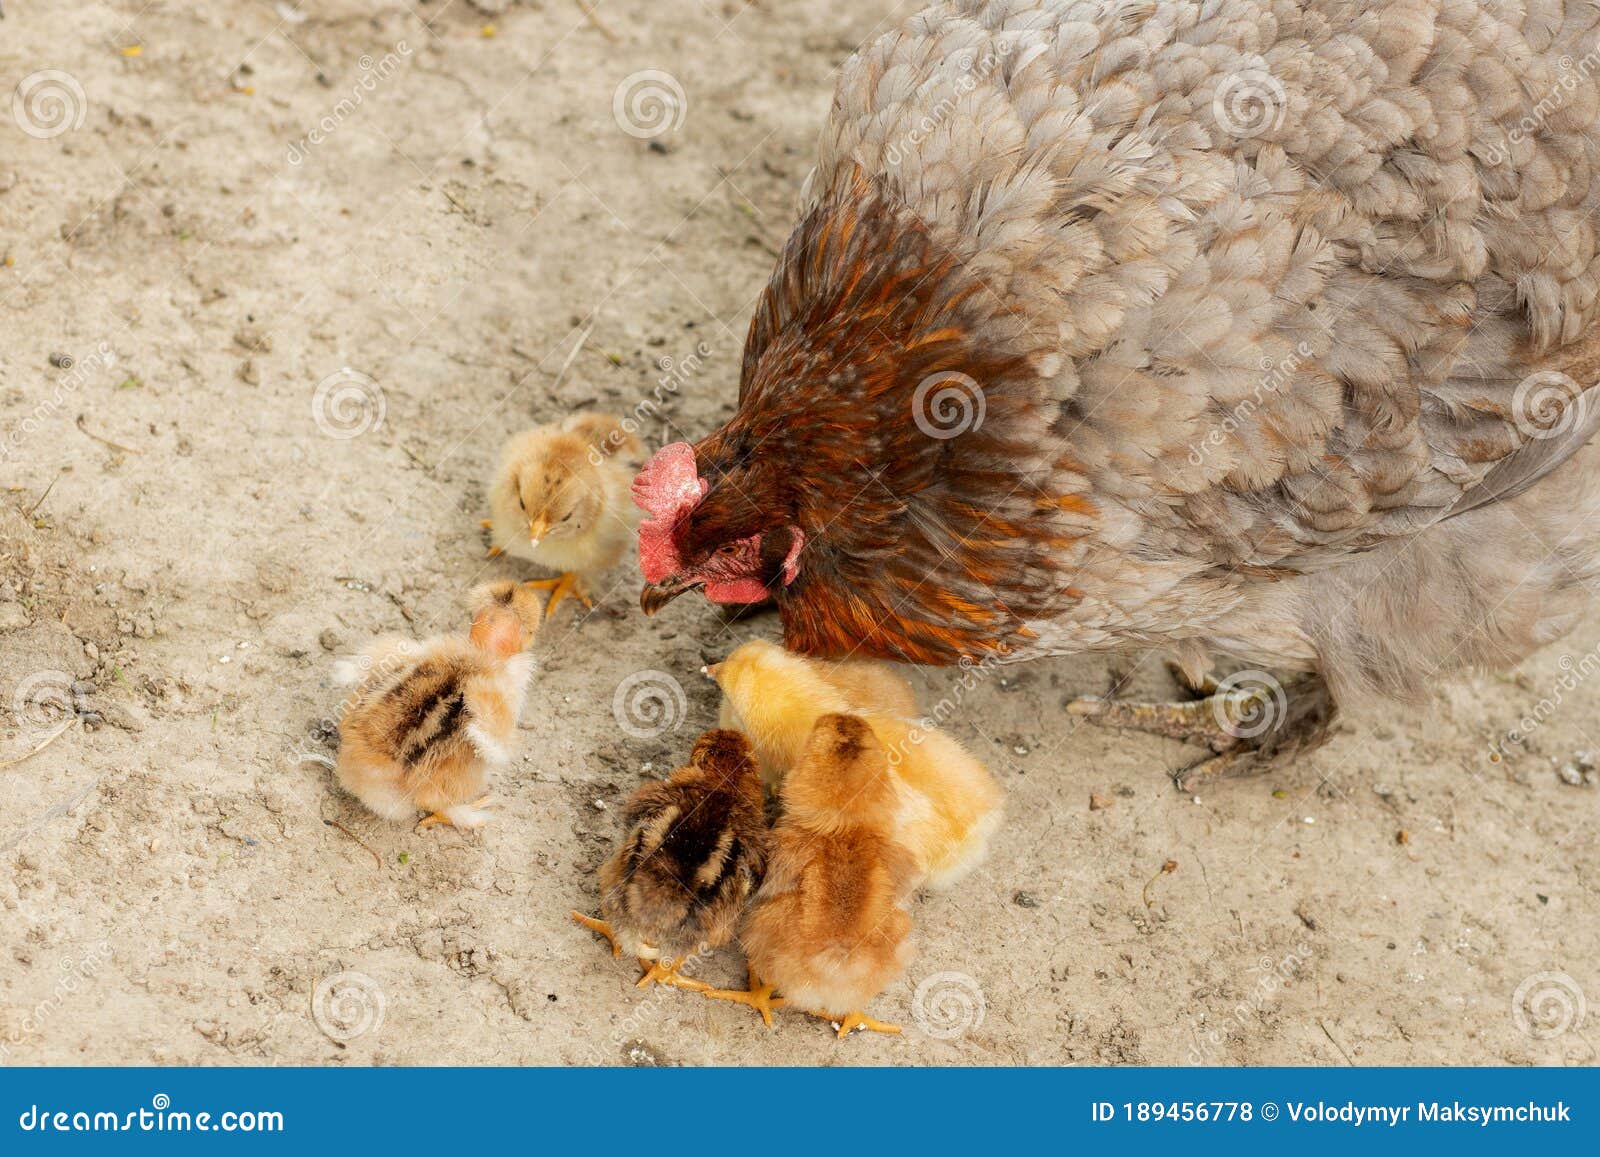 草地上的母鸡与小鸡家禽图片 - 免费可商用图片 - CC0素材网